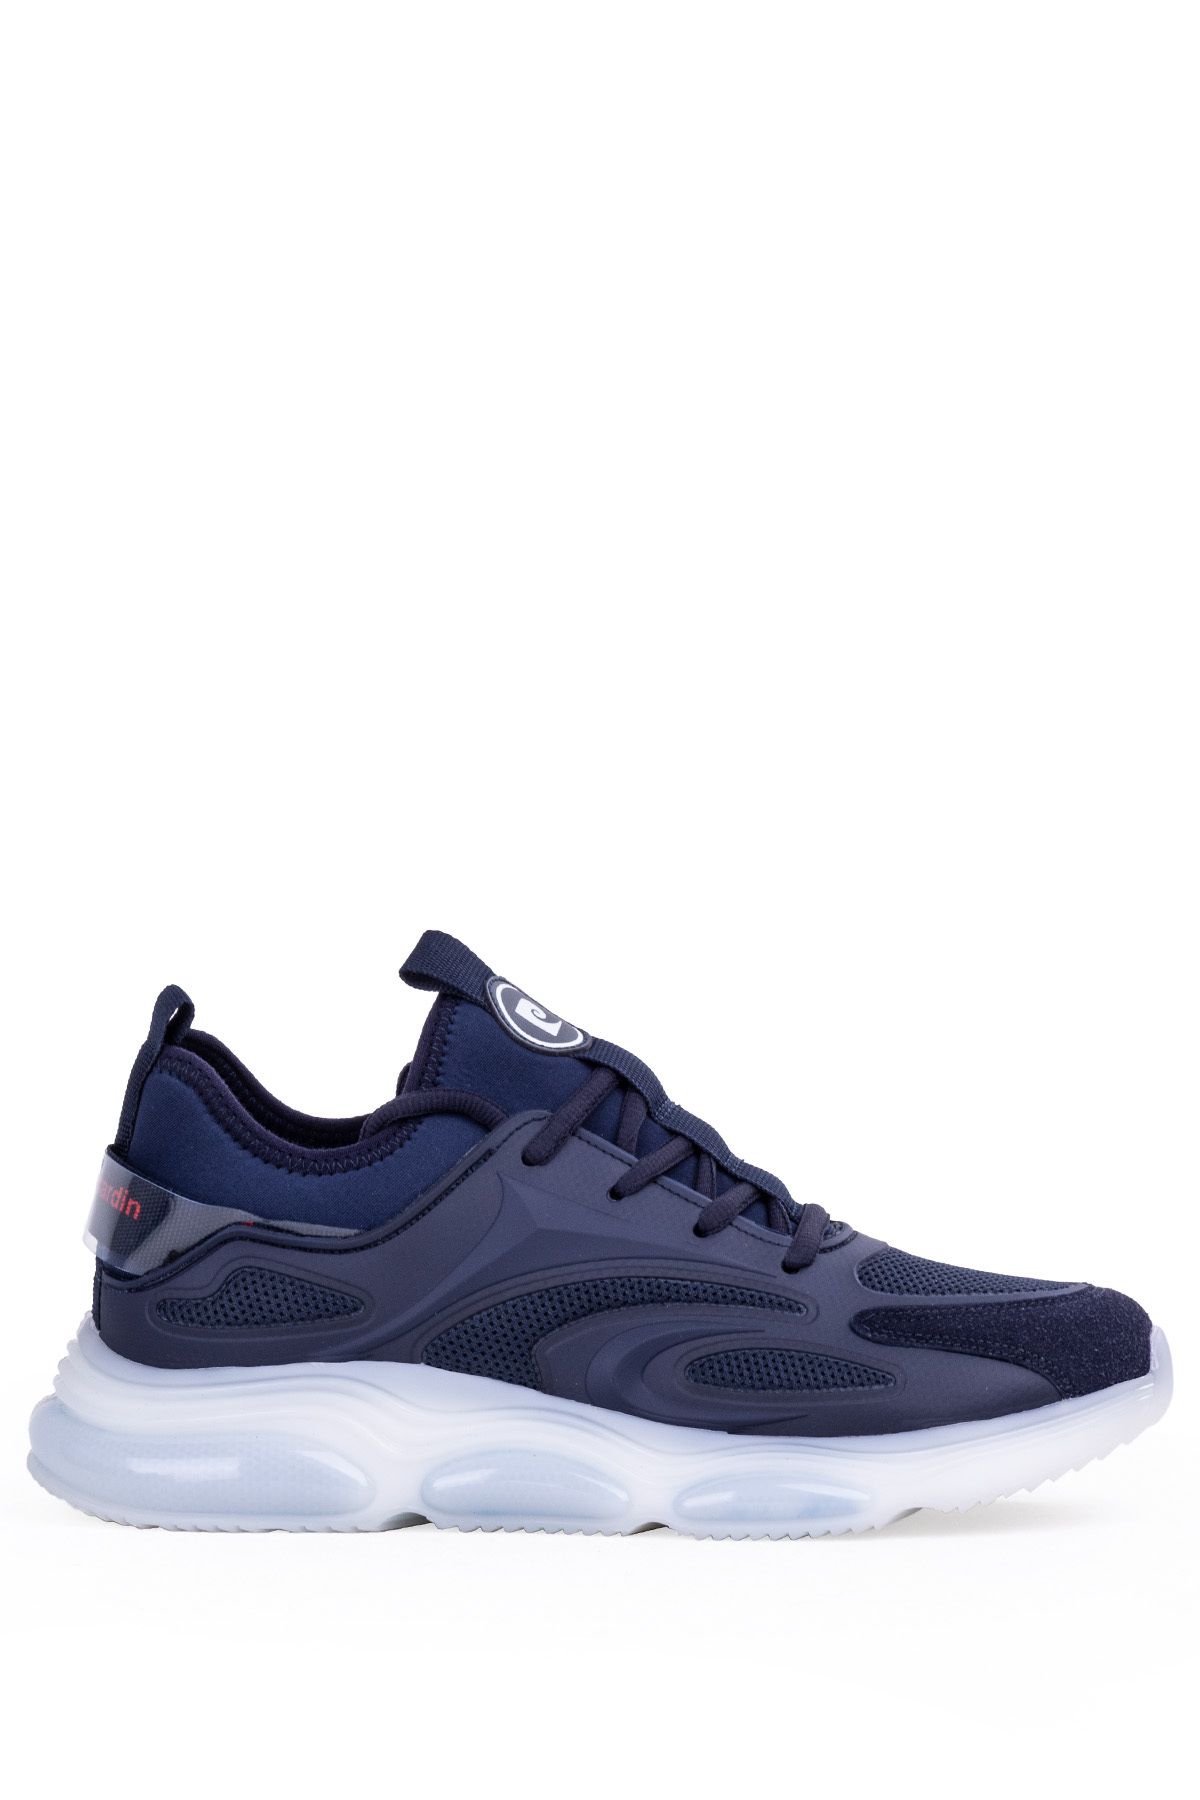 Pierre Cardin Air Maxx Erkek Günlük Spor Ayakkabı Şeffaf Air Taban Rahat Sneaker